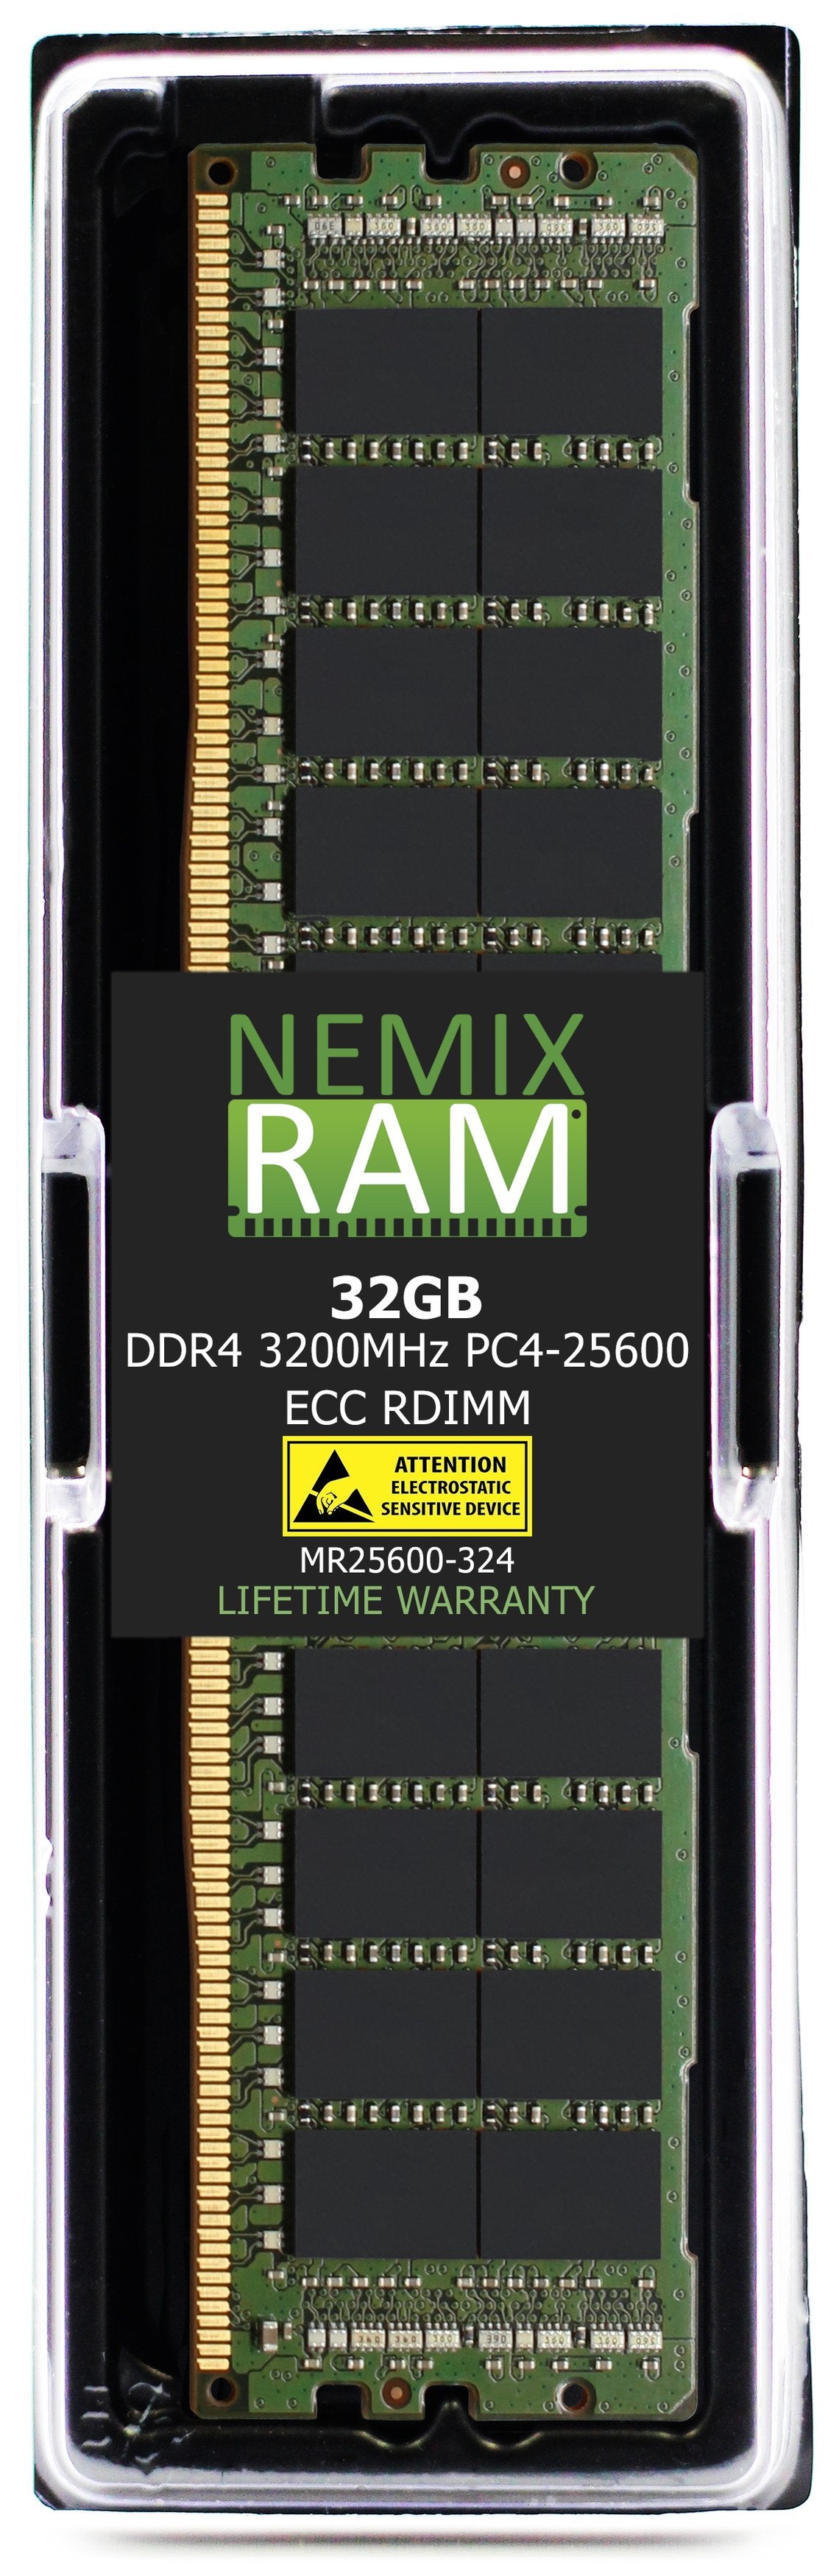 Hynix HMA84GR7CJR4N-XN 32G DDR4 3200MHZ PC4-25600 RDIMM Compatible Memory Module